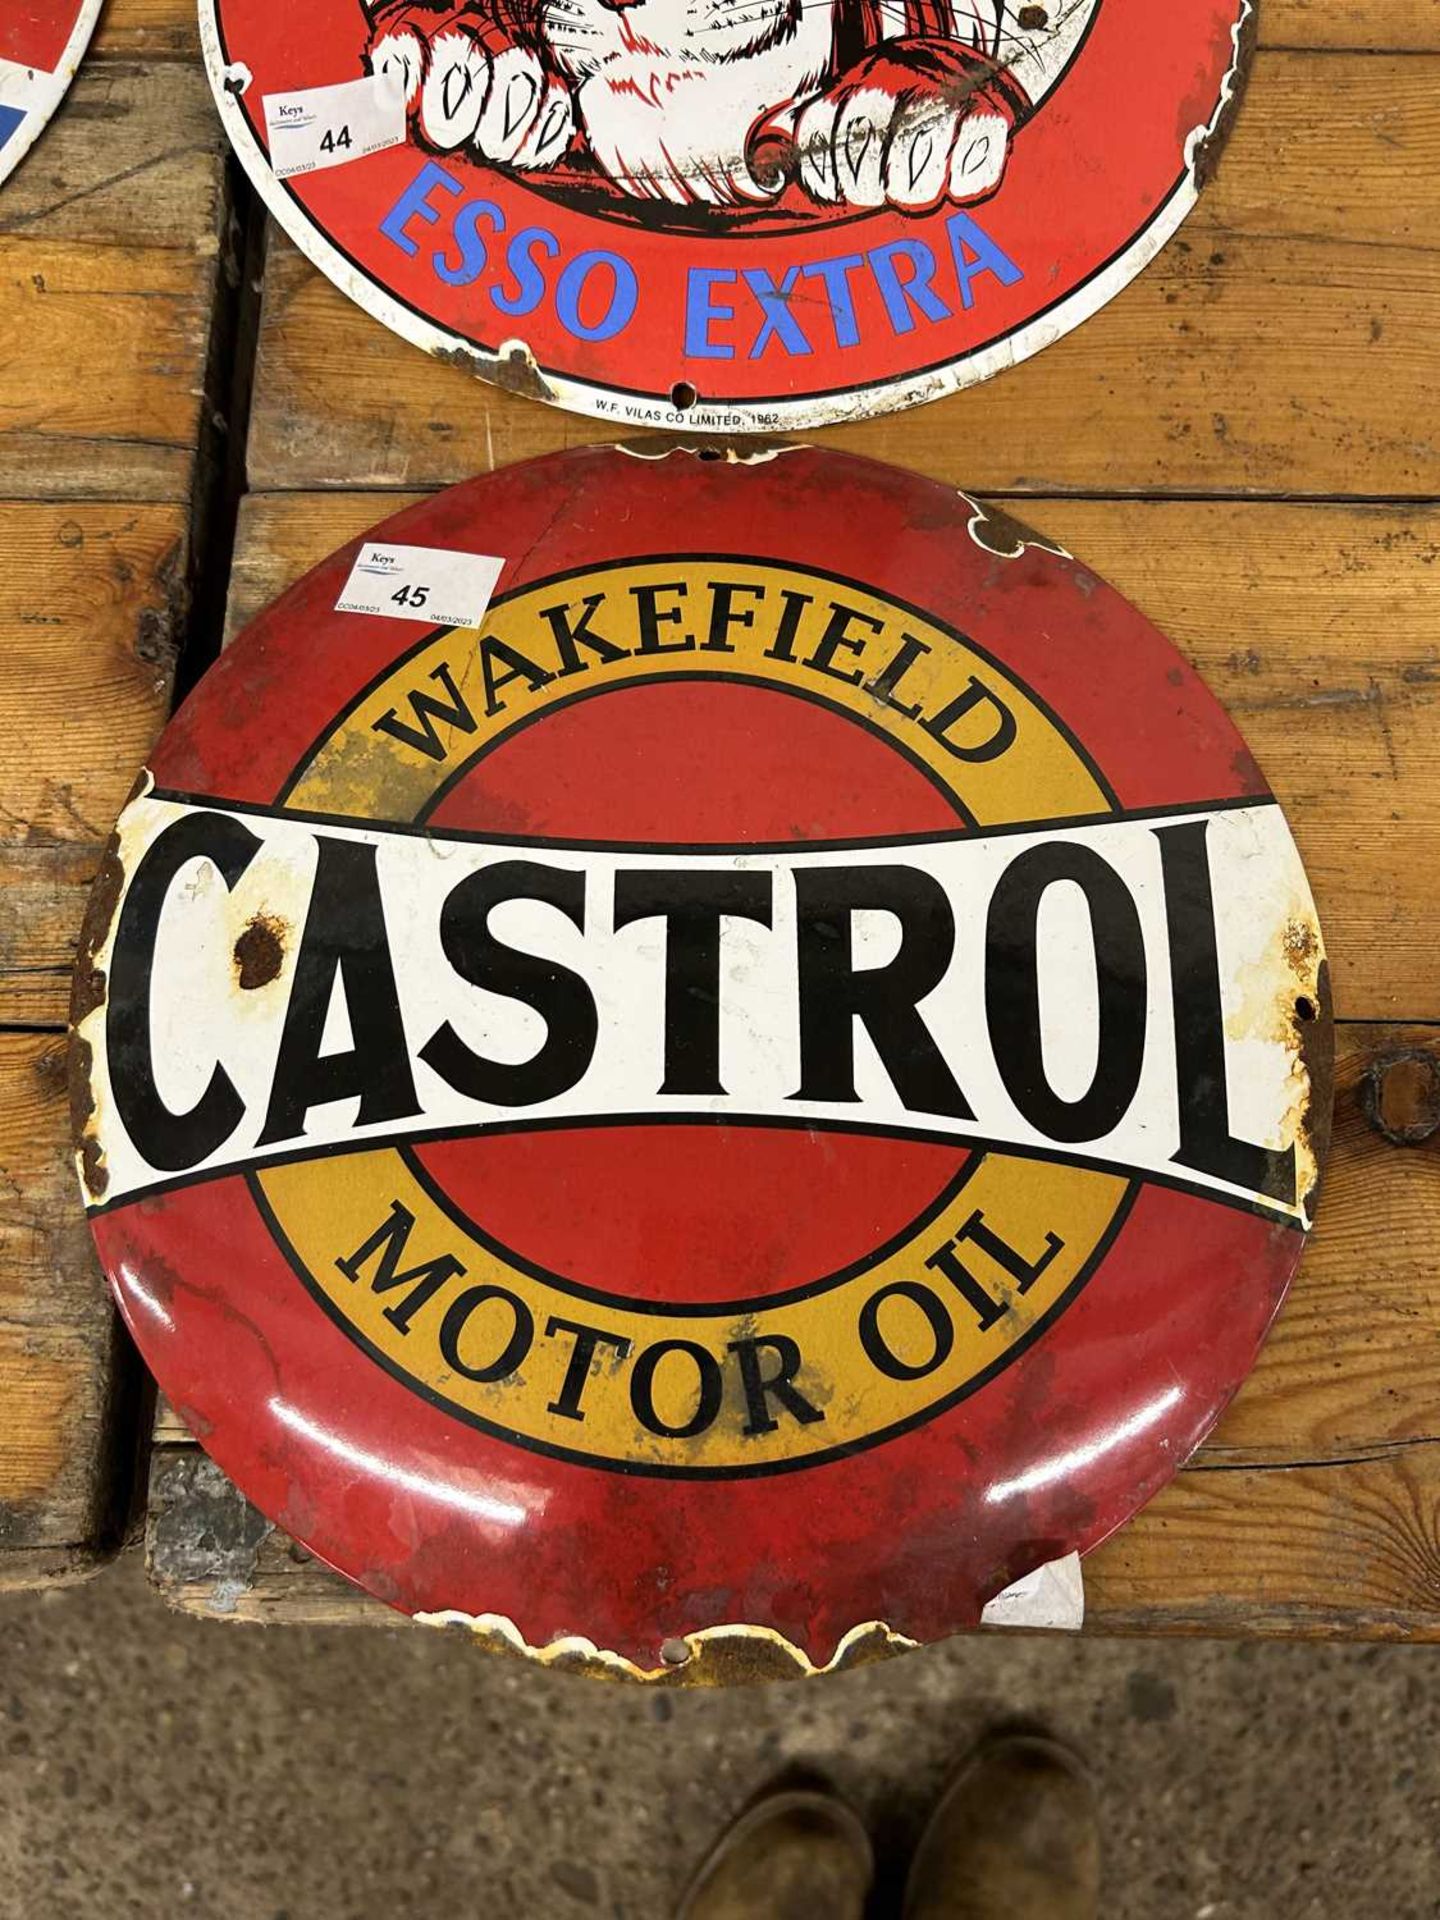 Castrol Motor Oil enamel sign, width approx 30cm